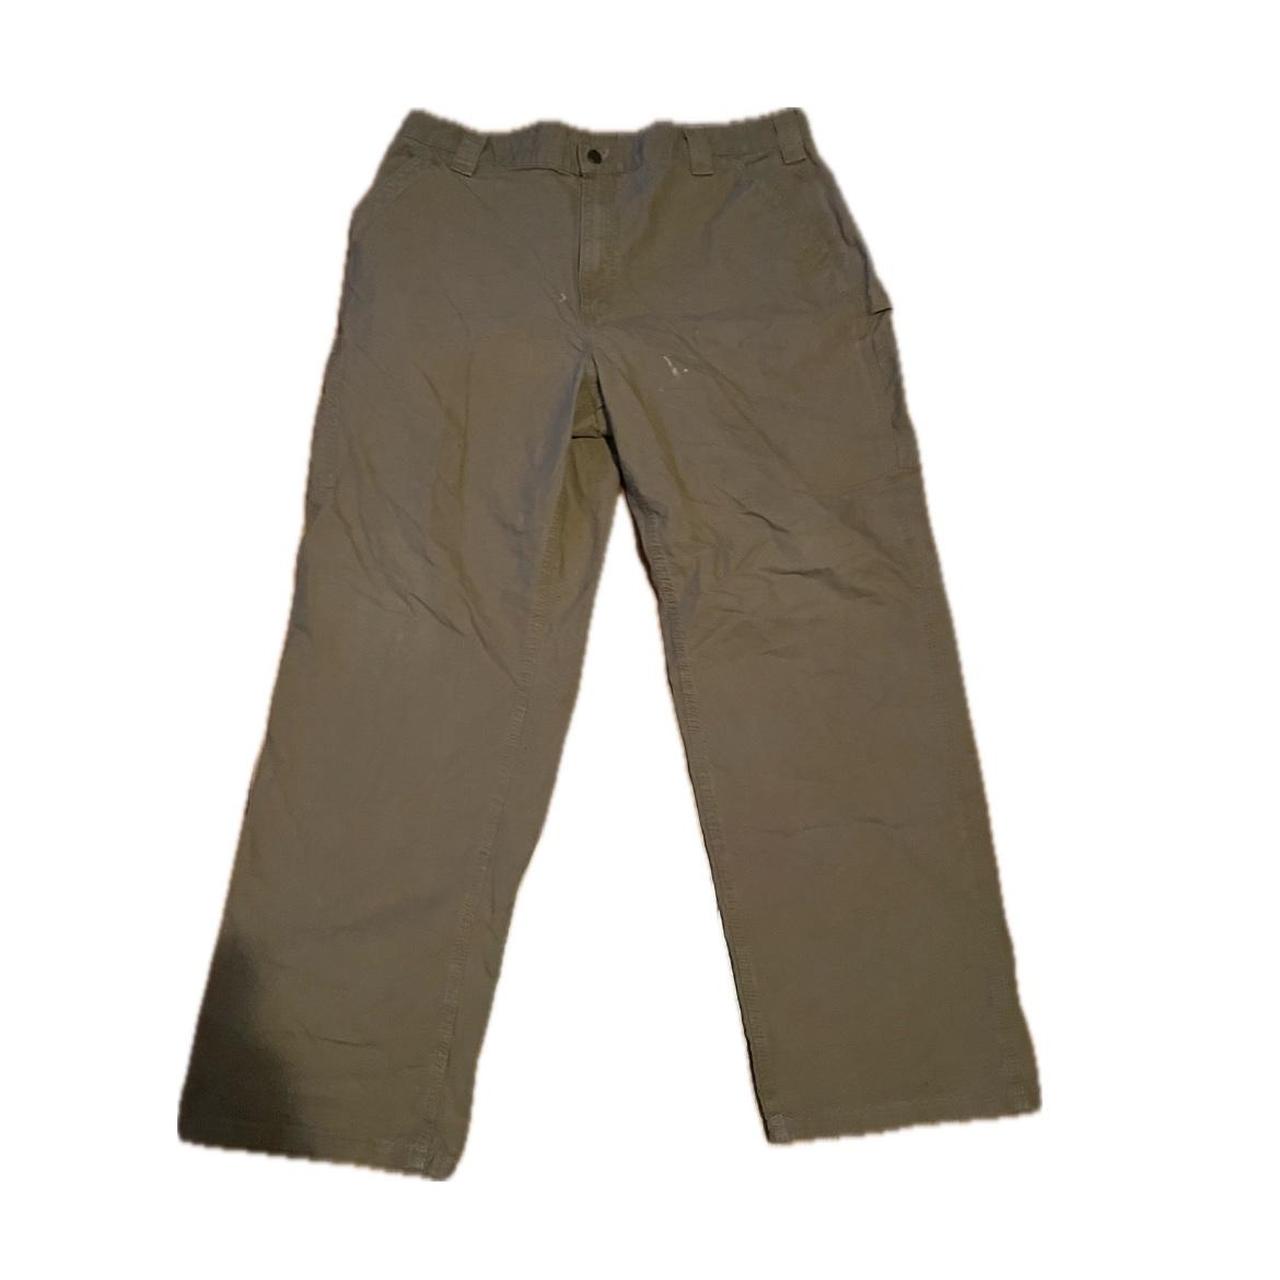 baggy carhartt cargo pants 40/32 - Depop